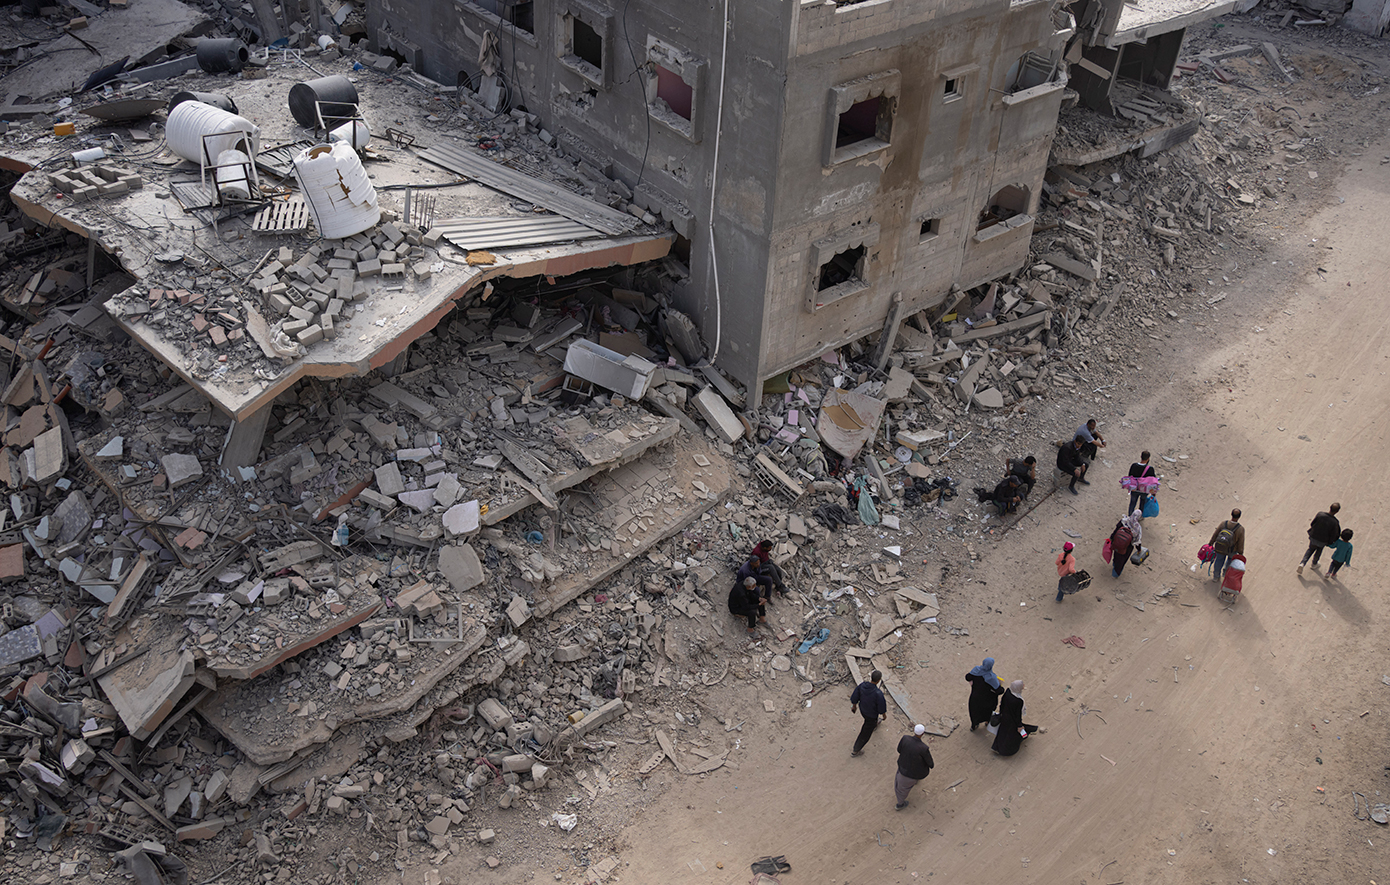 Ο λιμός στη Γάζα θα οδηγούσε σε μακροχρόνια σύγκρουση, υποστηρίζει ο υπουργός Άμυνας των ΗΠΑ